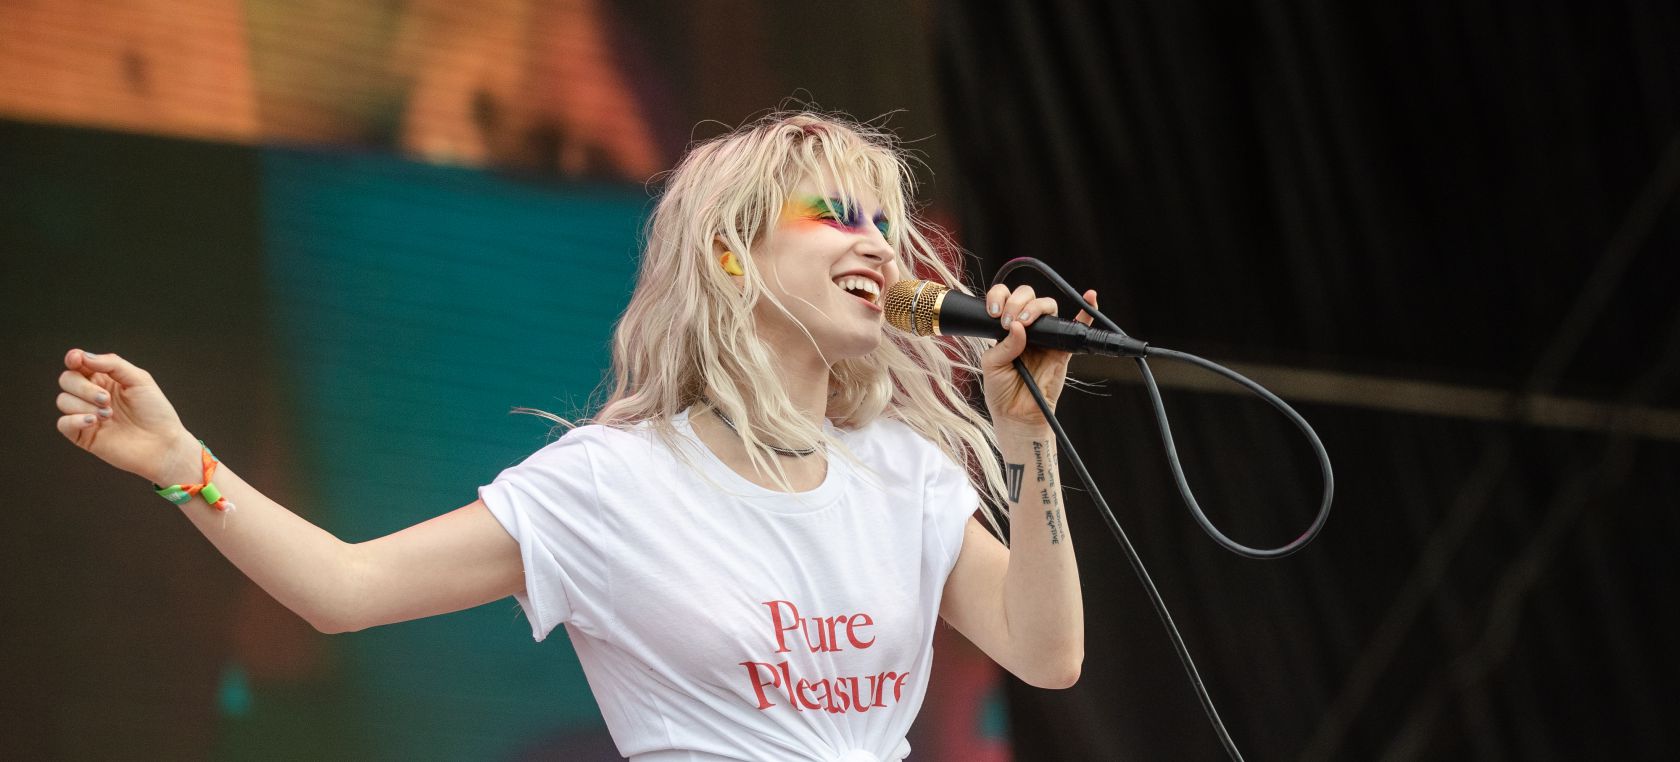 Paramore regresa en 2022 con un nuevo álbum | Música | LOS40